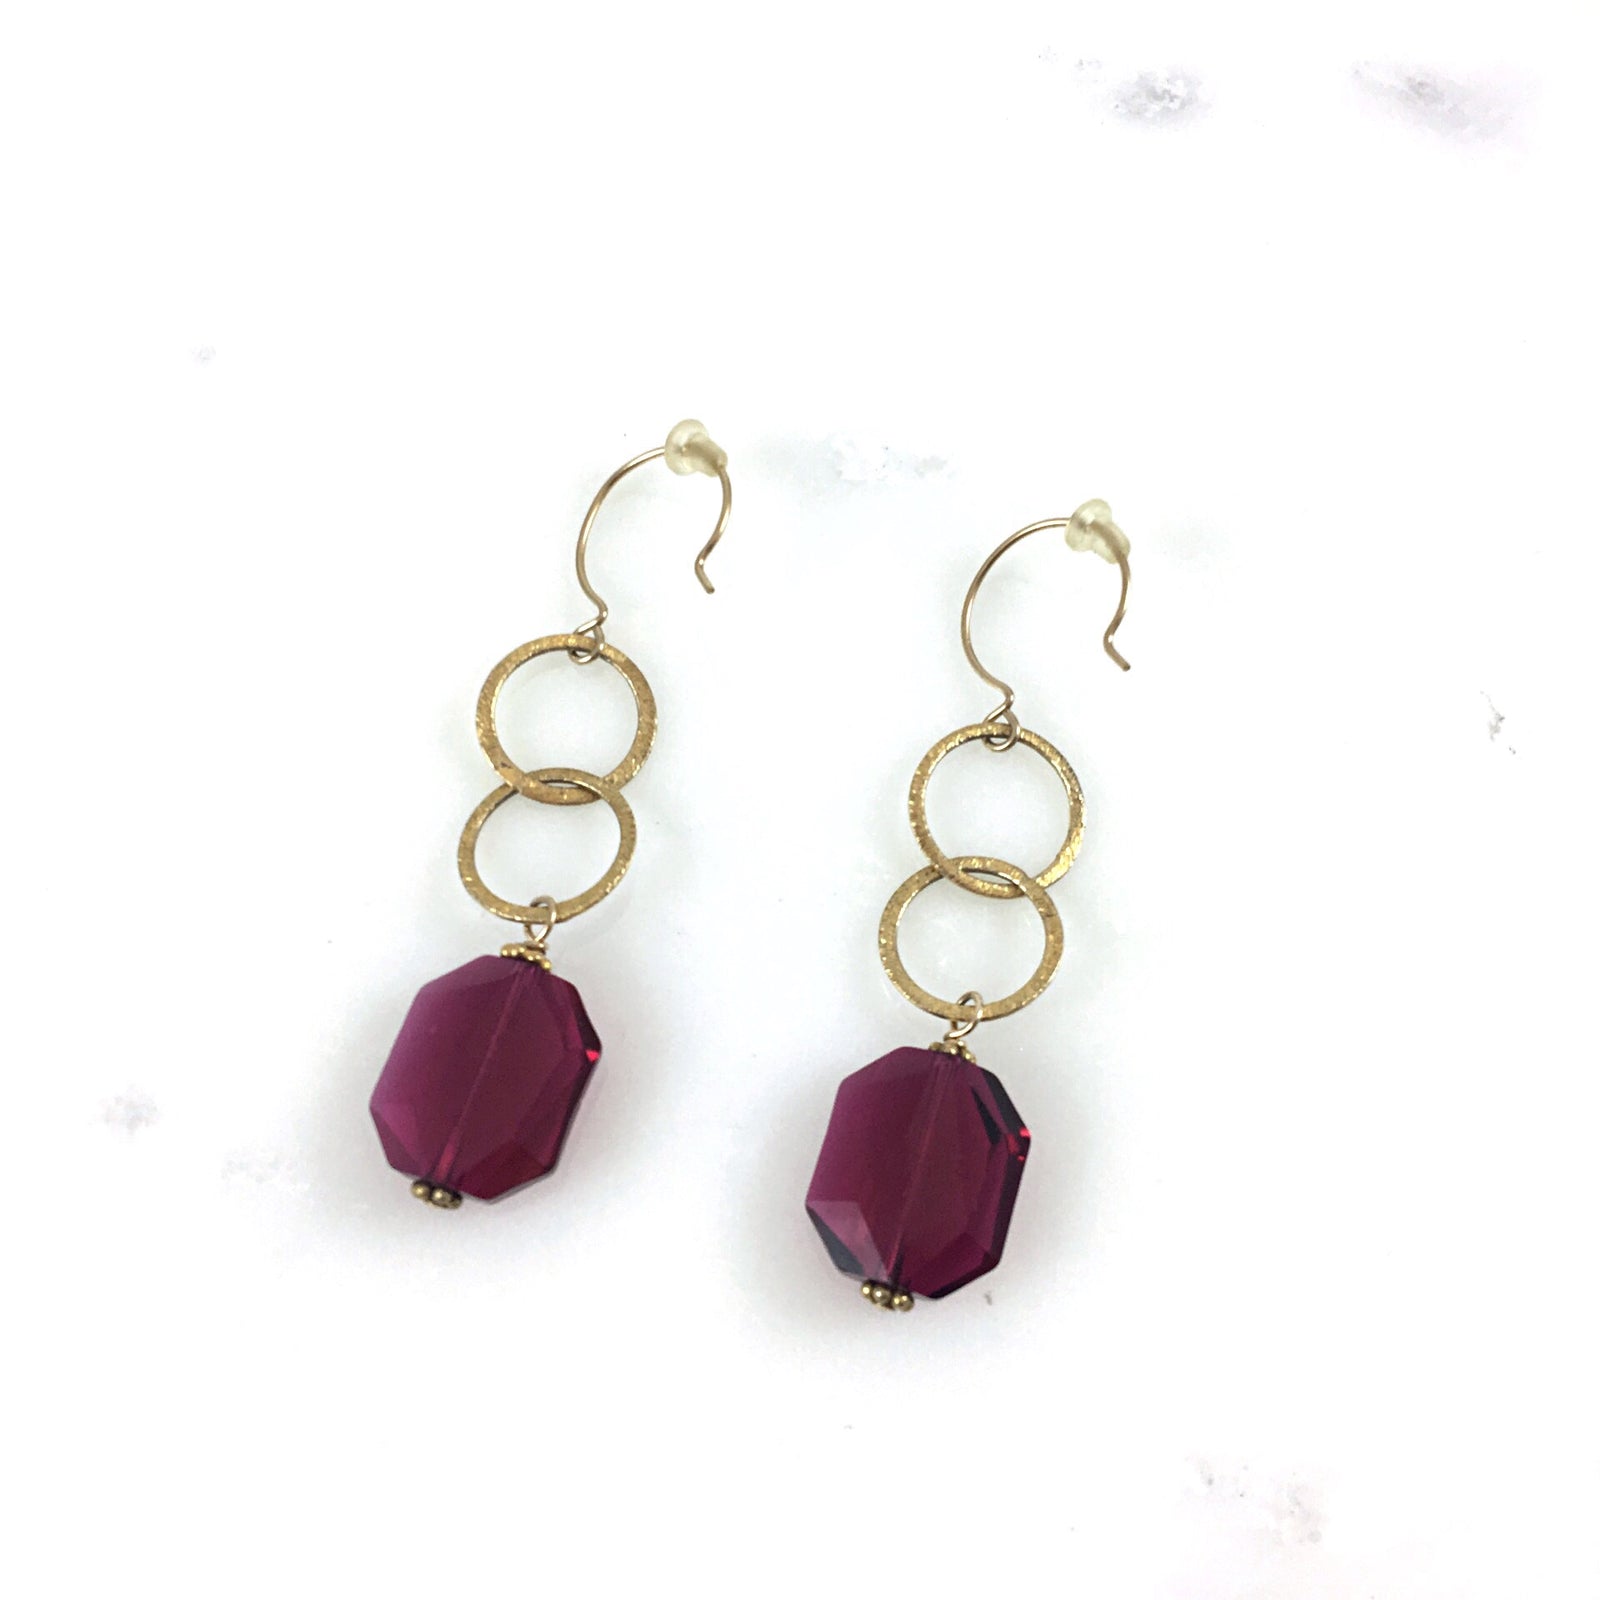 Red Crystal Drop Earrings